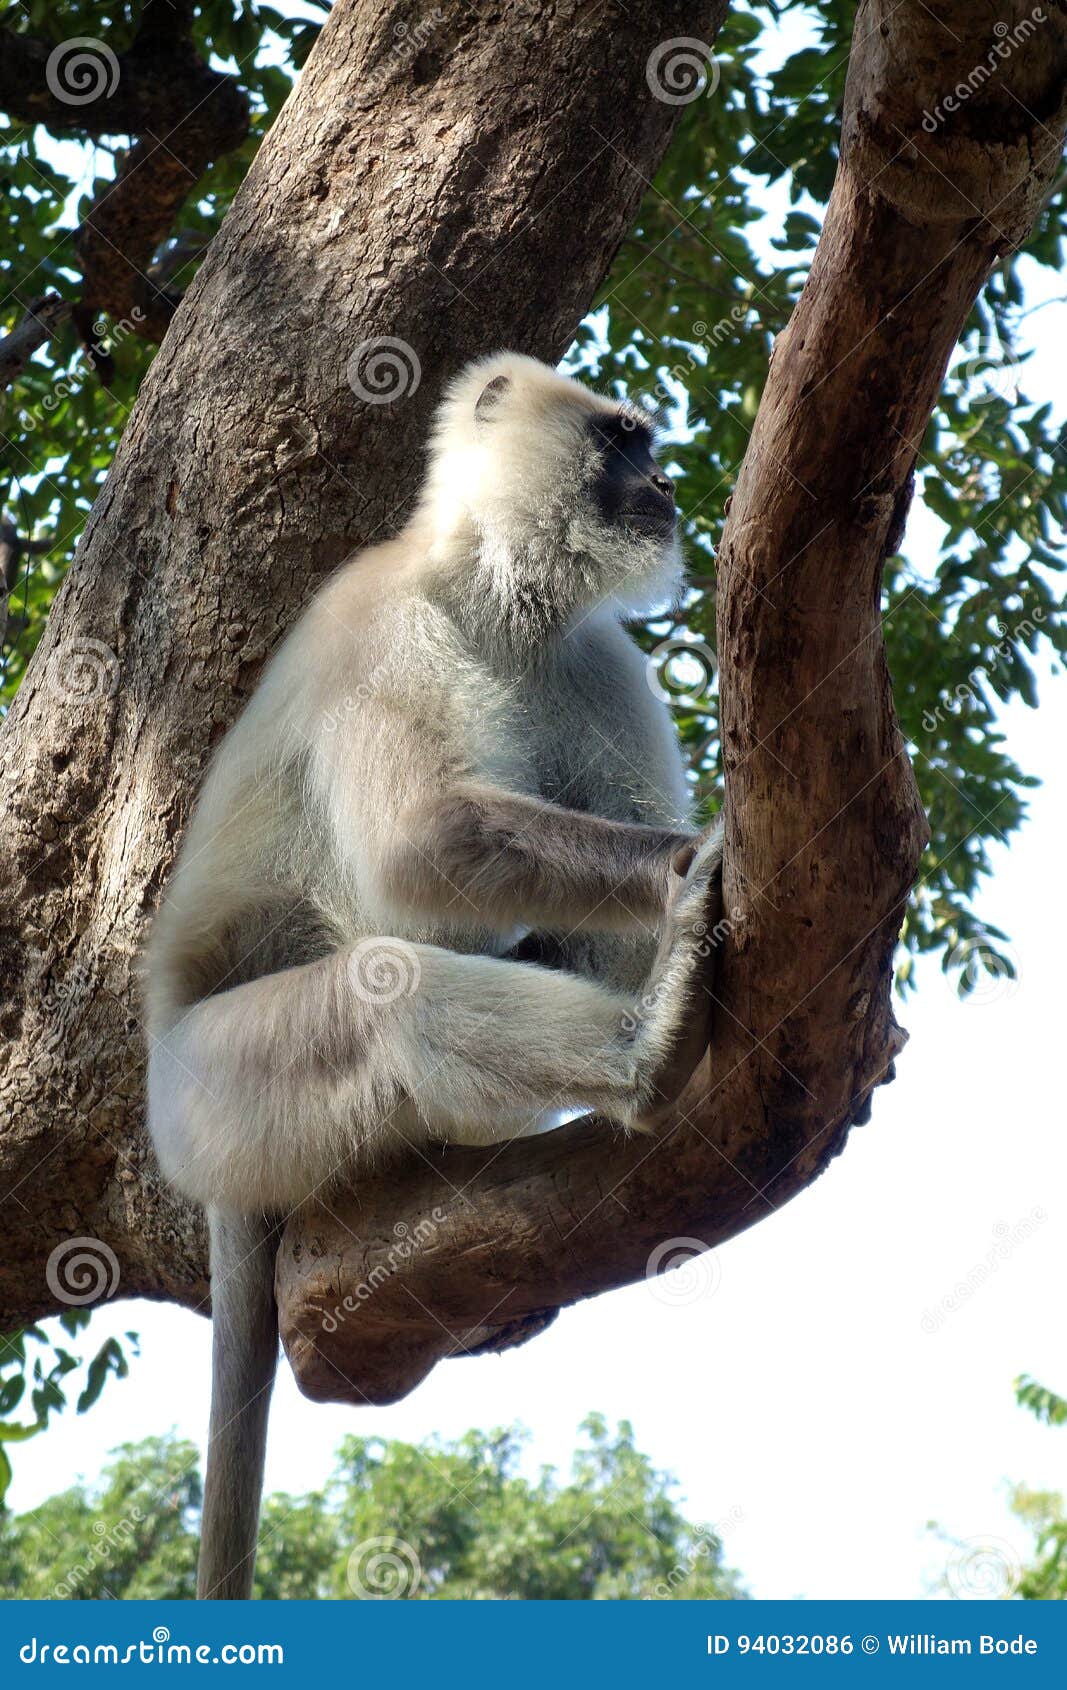 macaco branco, fotos gratuitas - Rgbstock - fotos gratuitas, CupidsArrow1